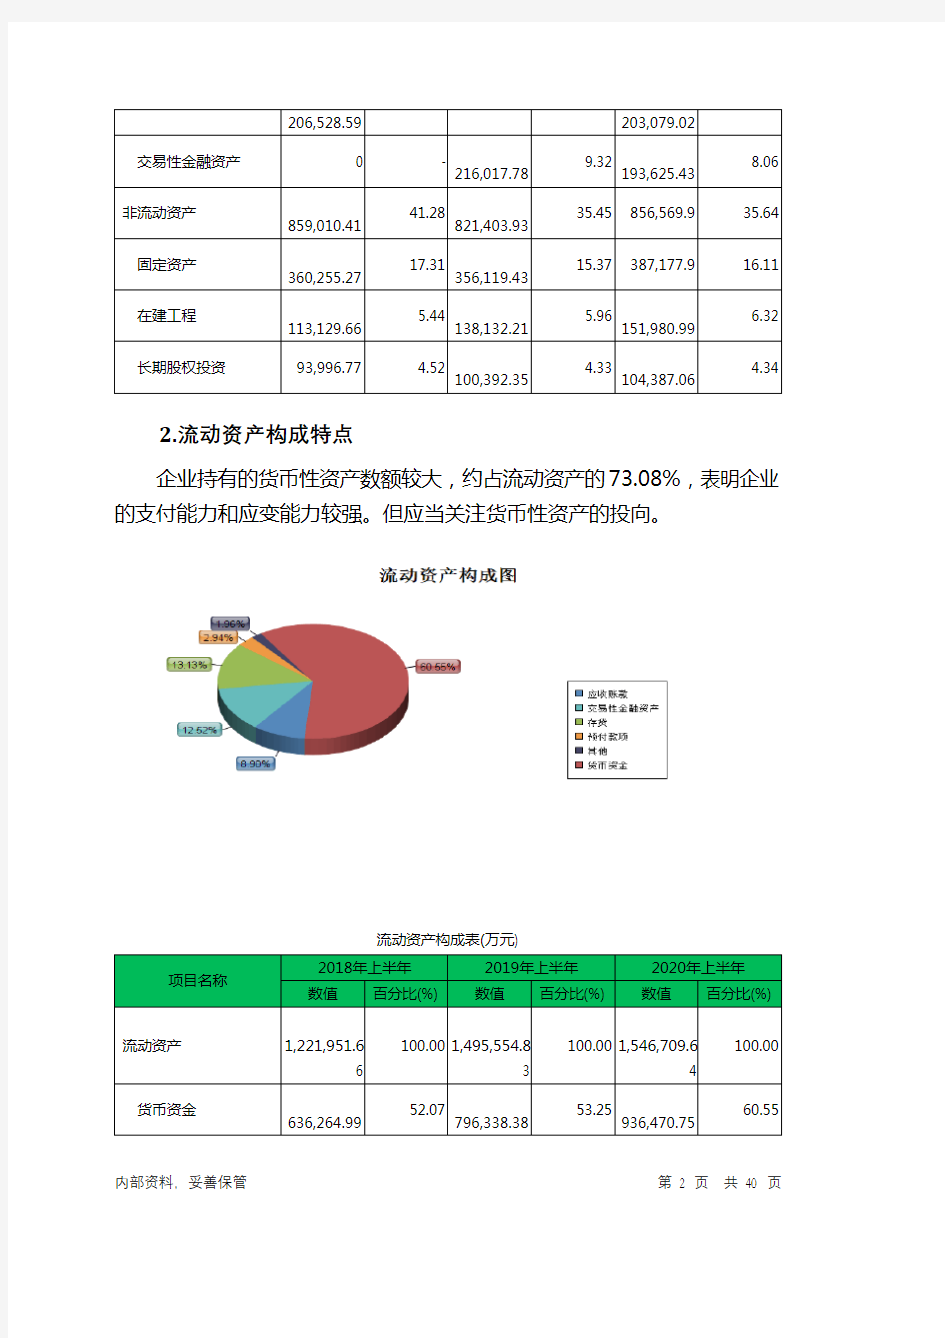 凤凰传媒2020年上半年财务分析详细报告